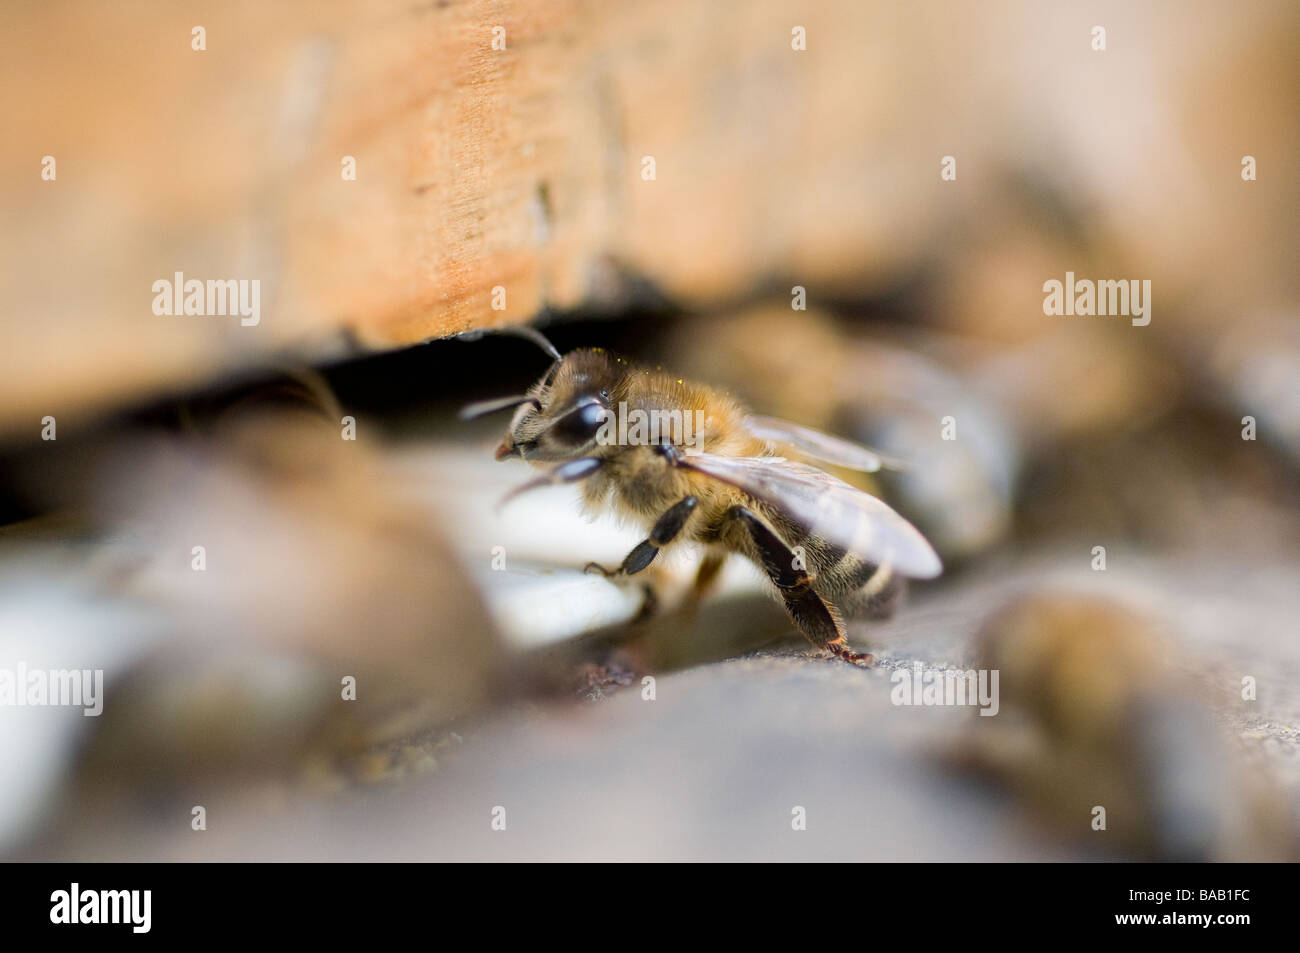 Acercamiento de las abejas en una colmena entrada Foto de stock